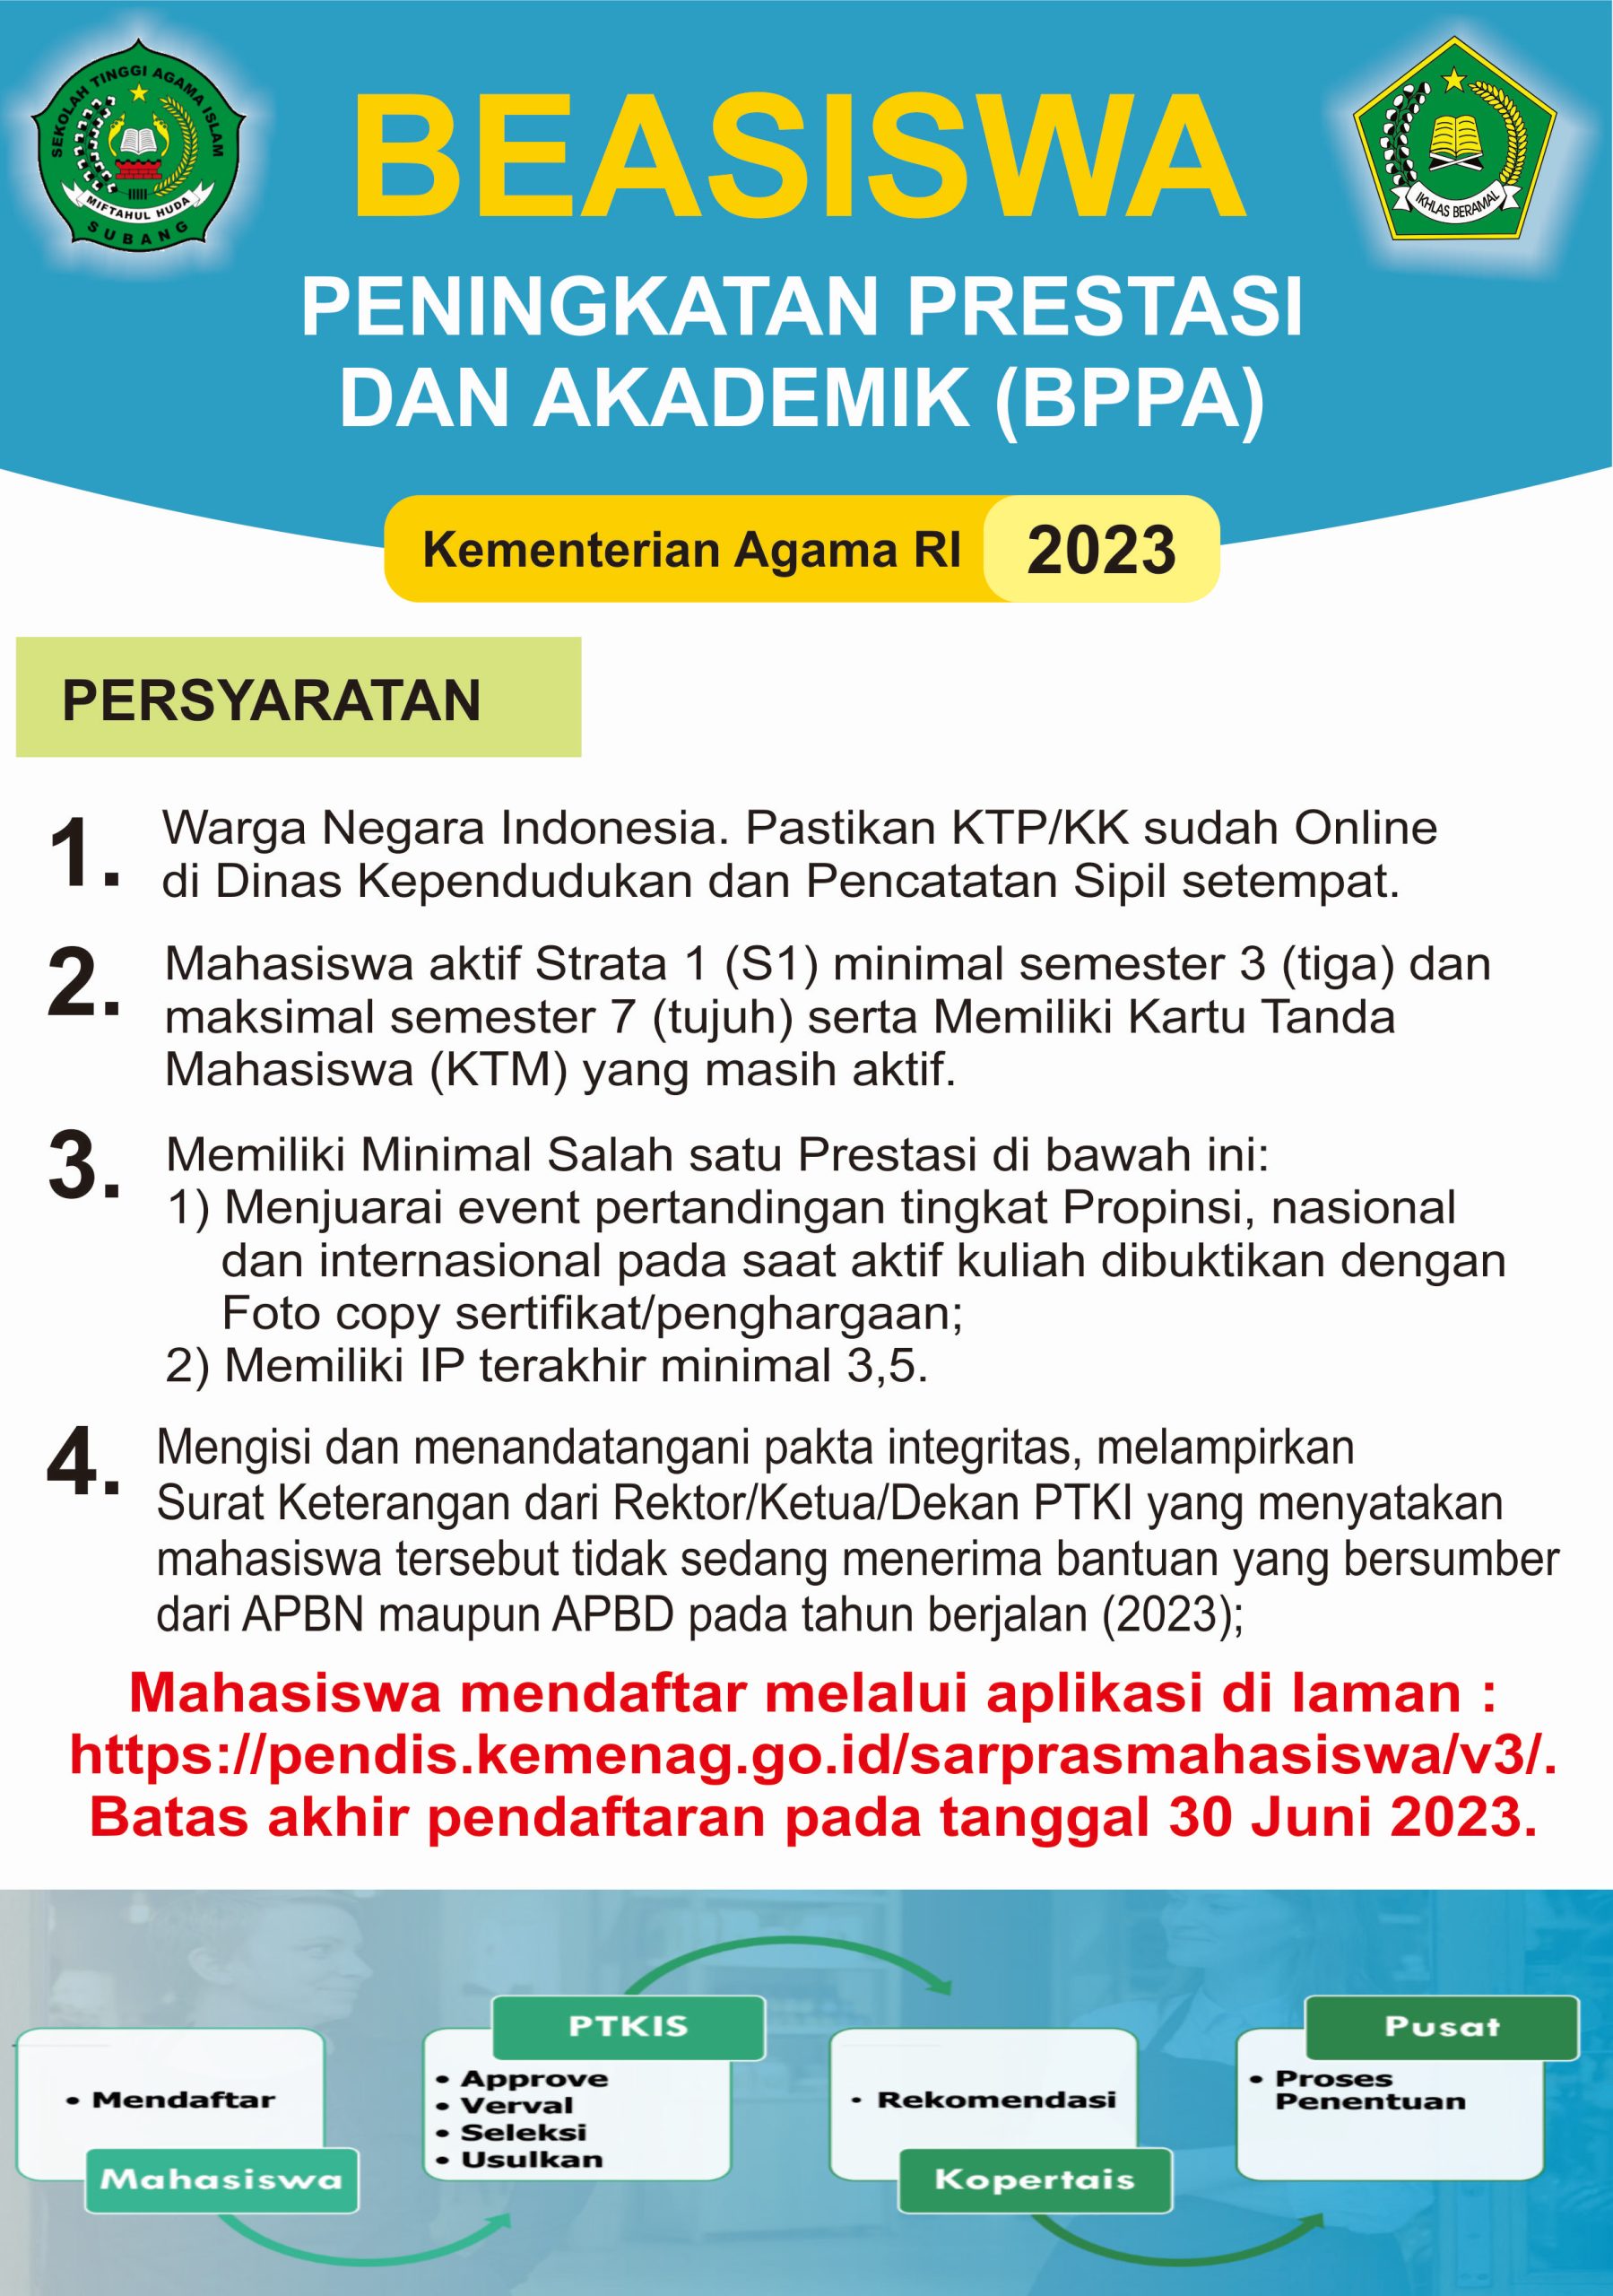 Pendaftaran Beasiswa BPPA 2023